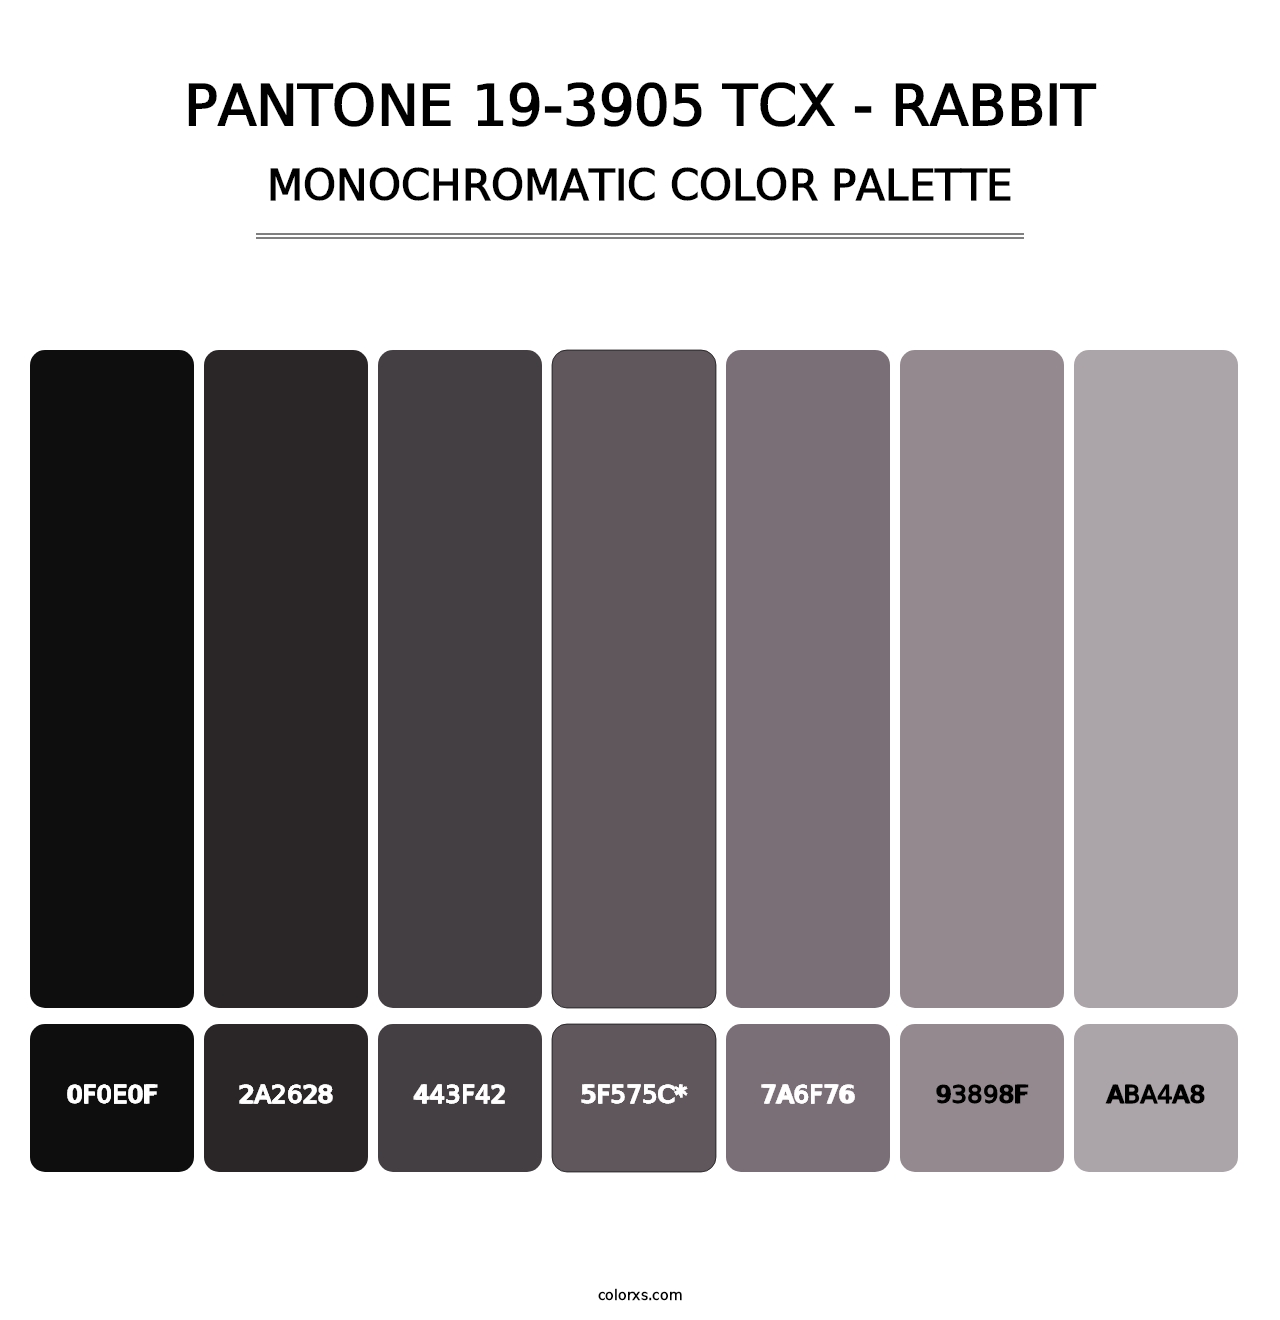 PANTONE 19-3905 TCX - Rabbit - Monochromatic Color Palette